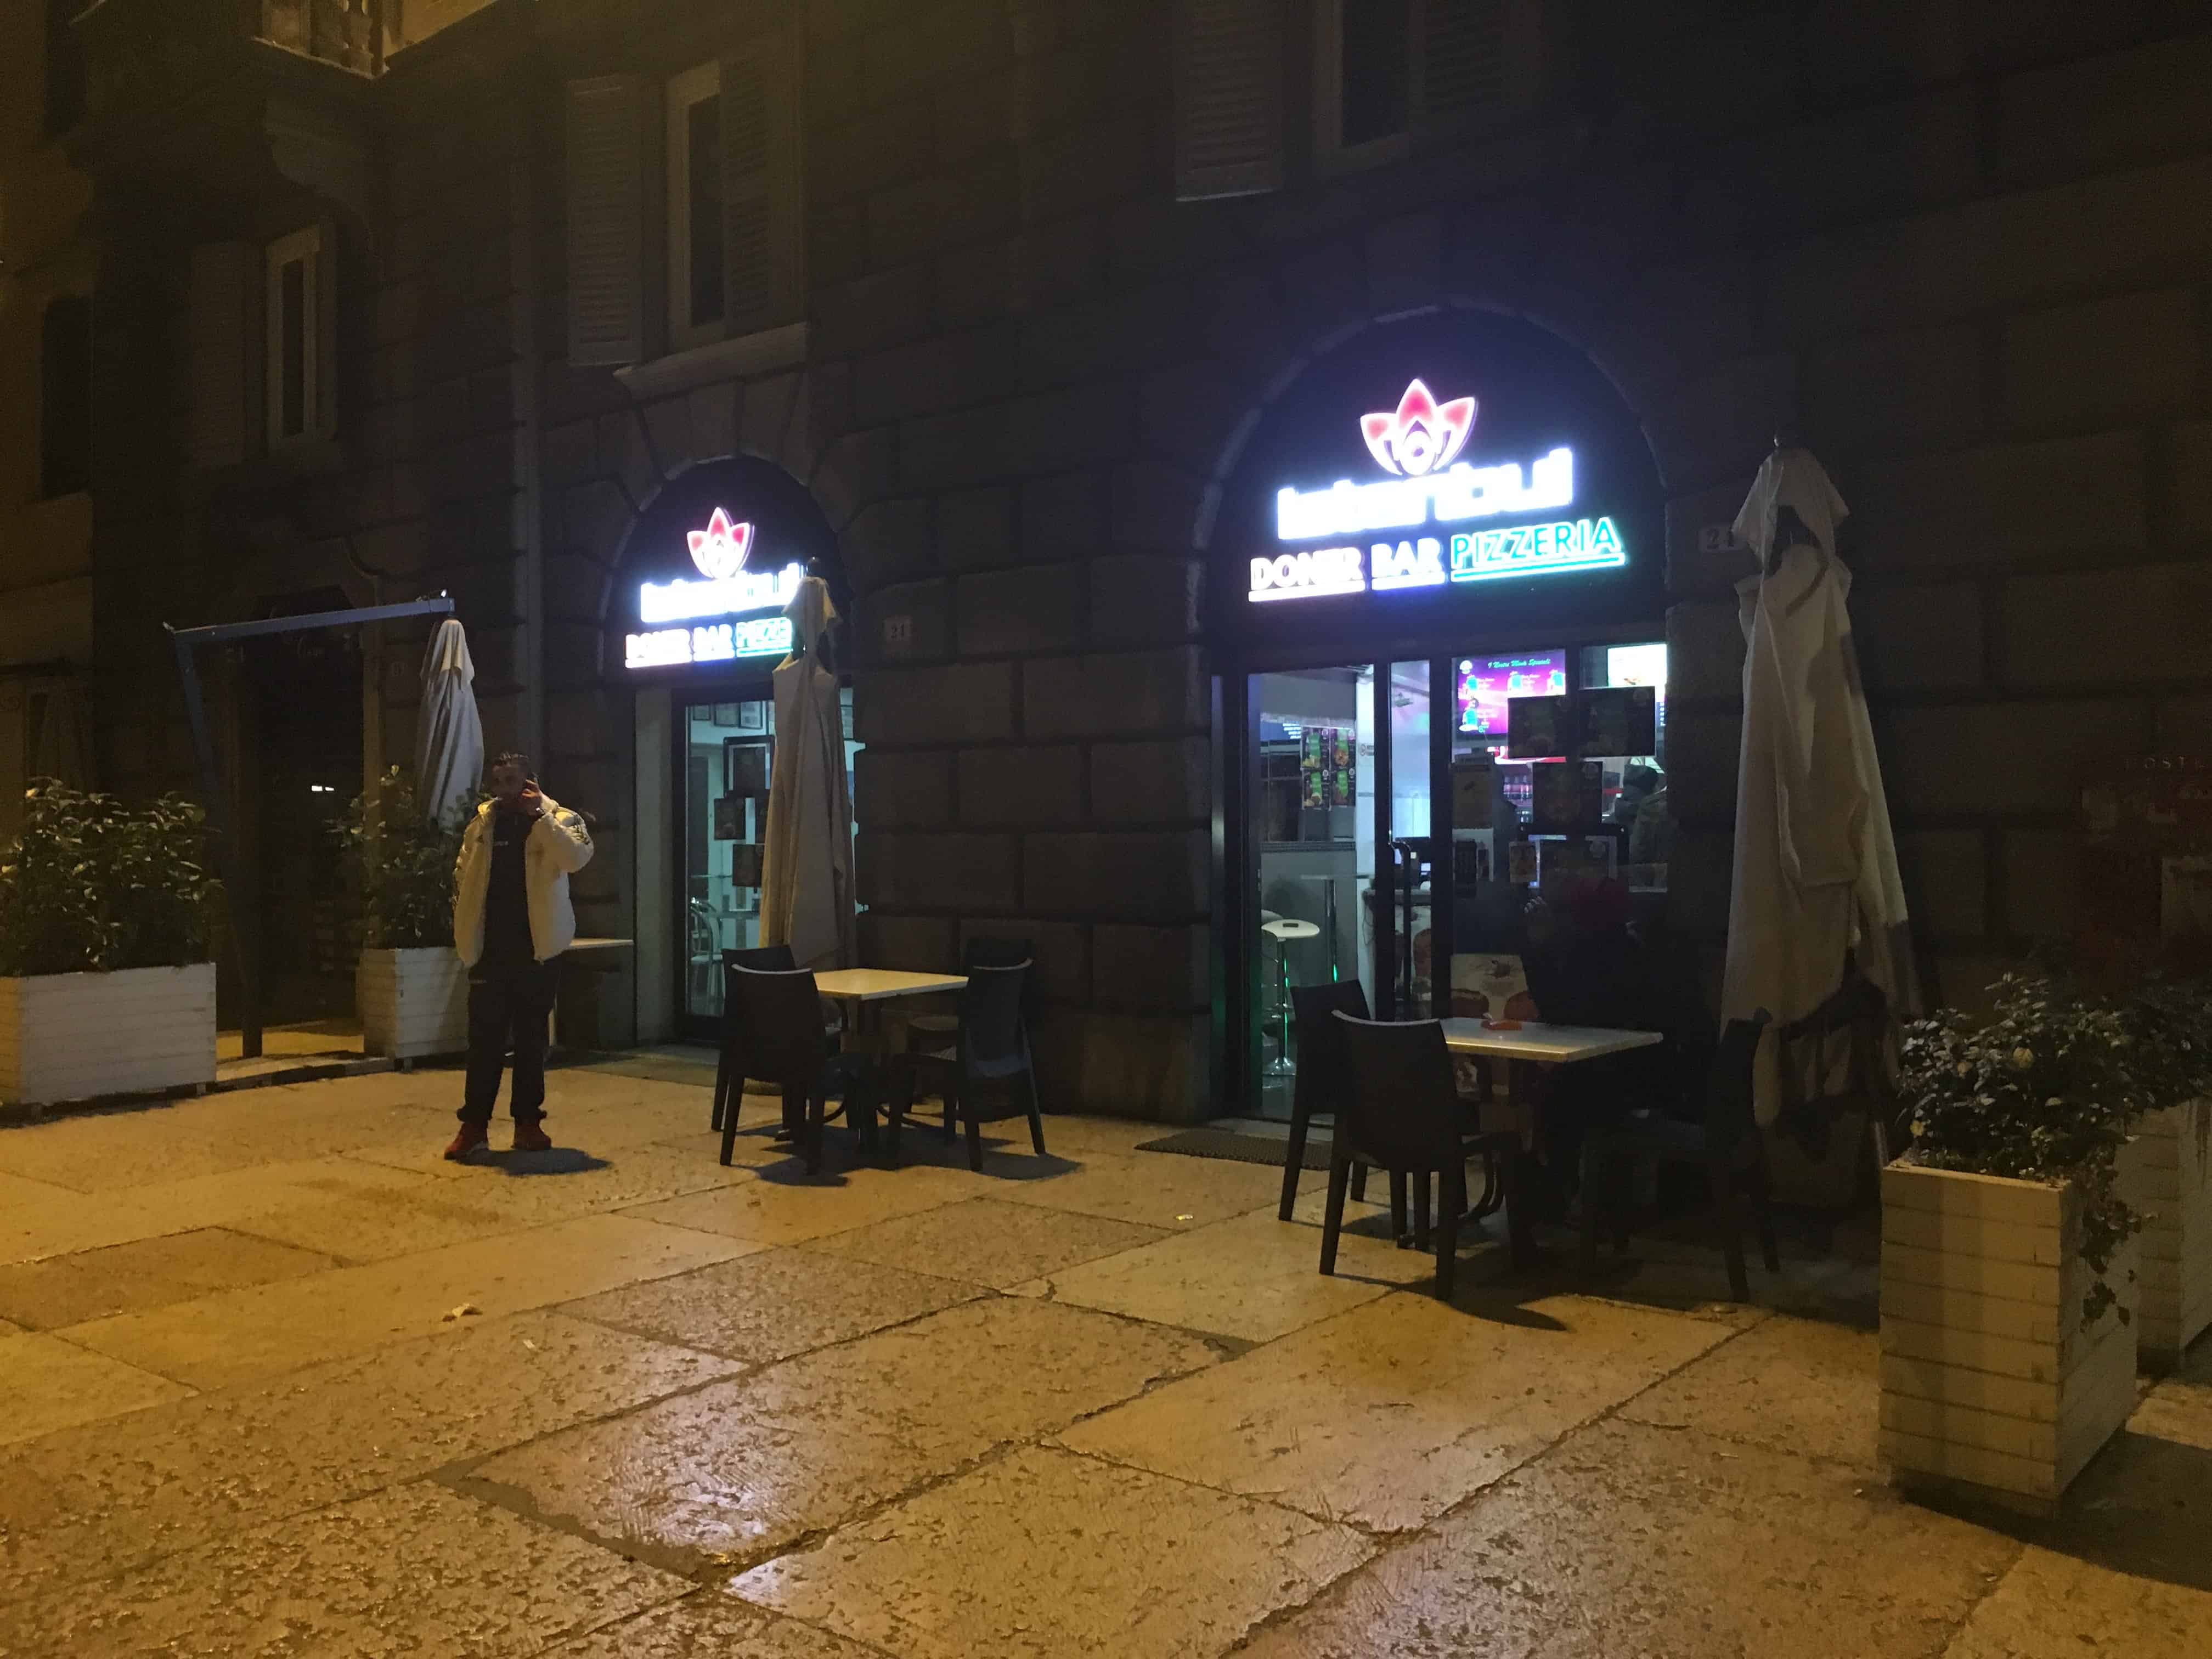 Istanbul Döner Kebab in Verona, Italy